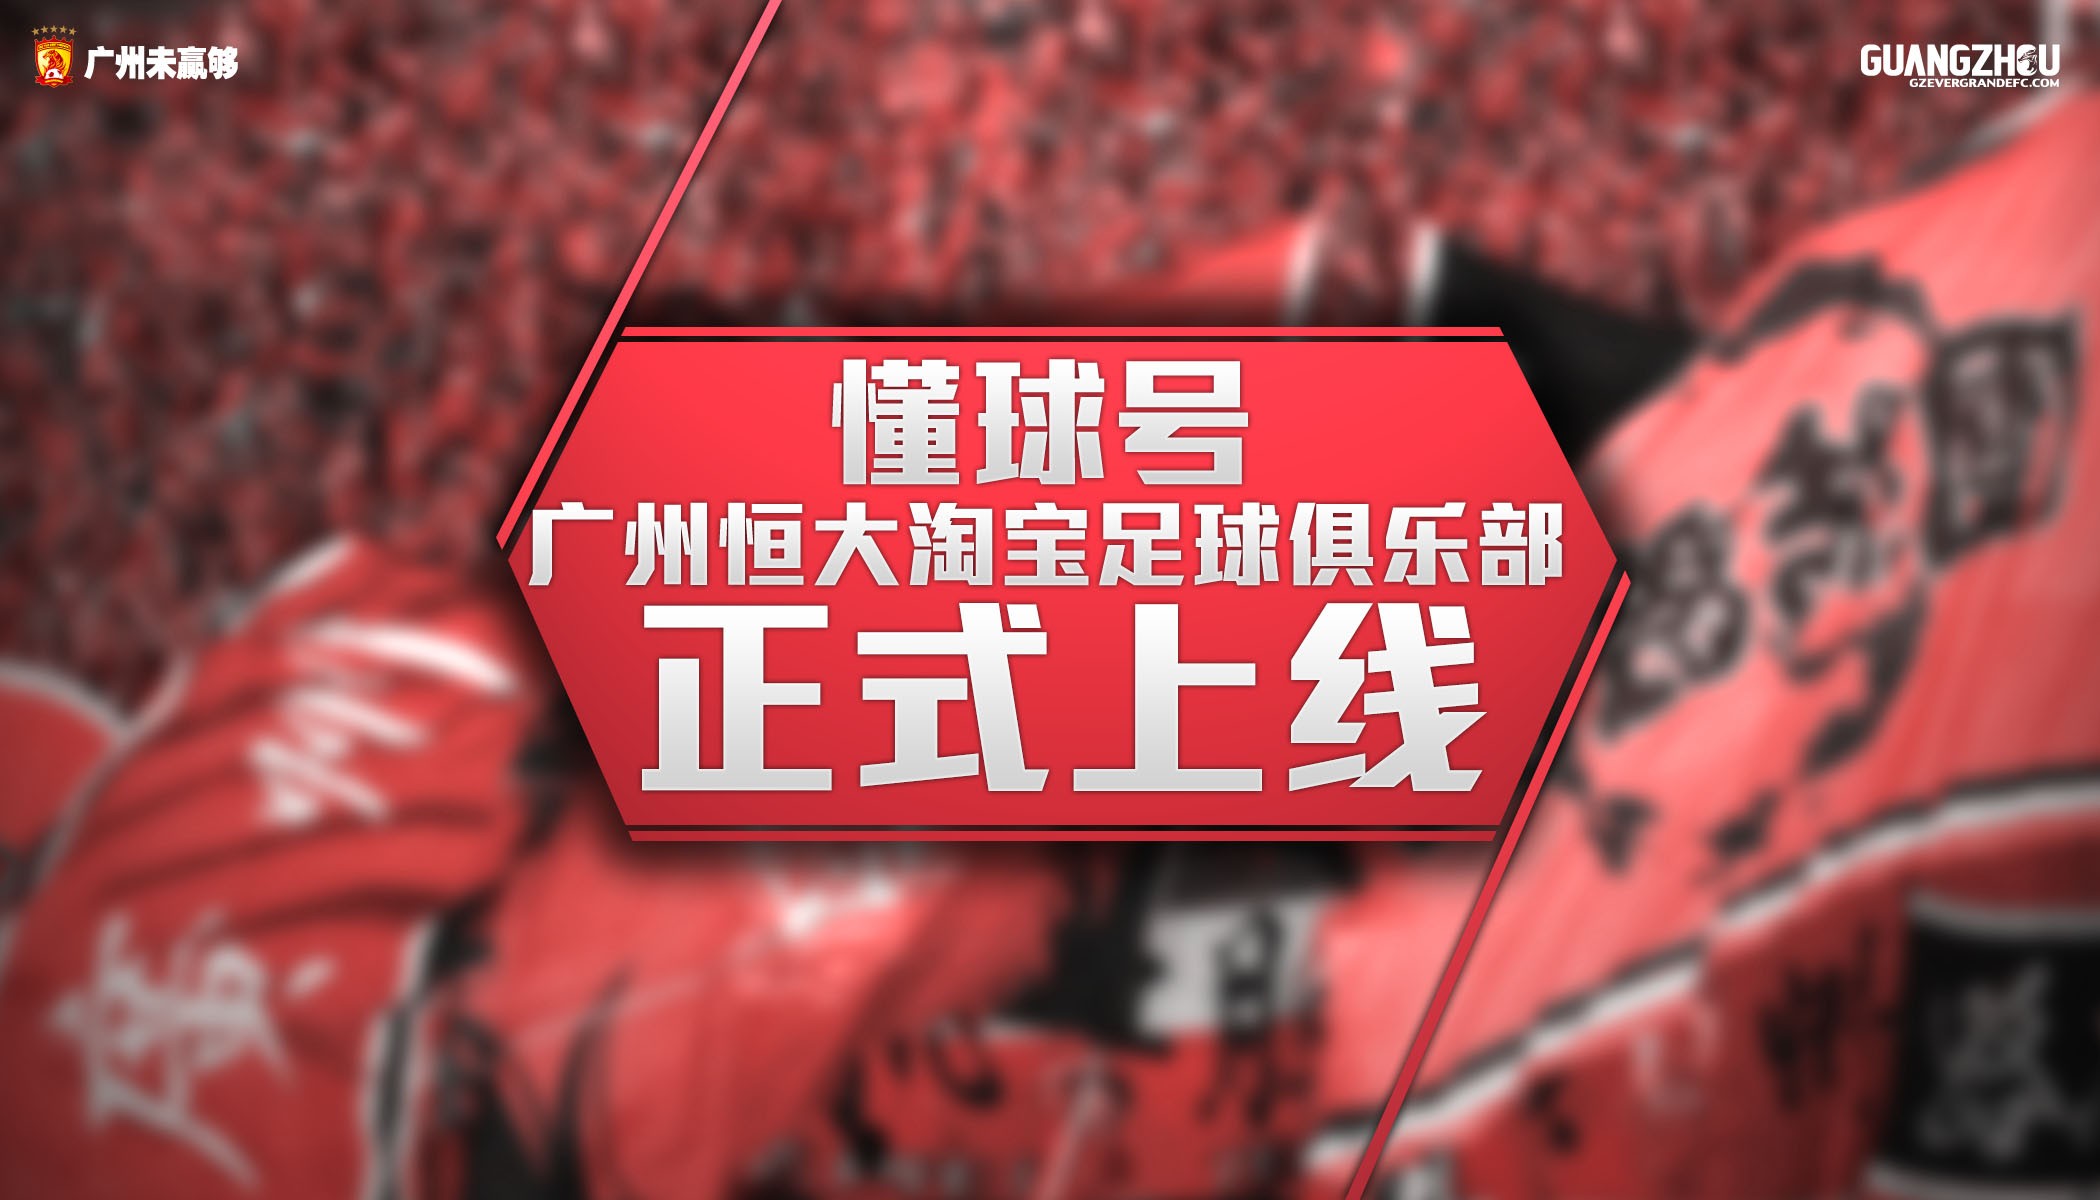 广州恒大淘宝足球俱乐部正式入驻懂球号啦 -